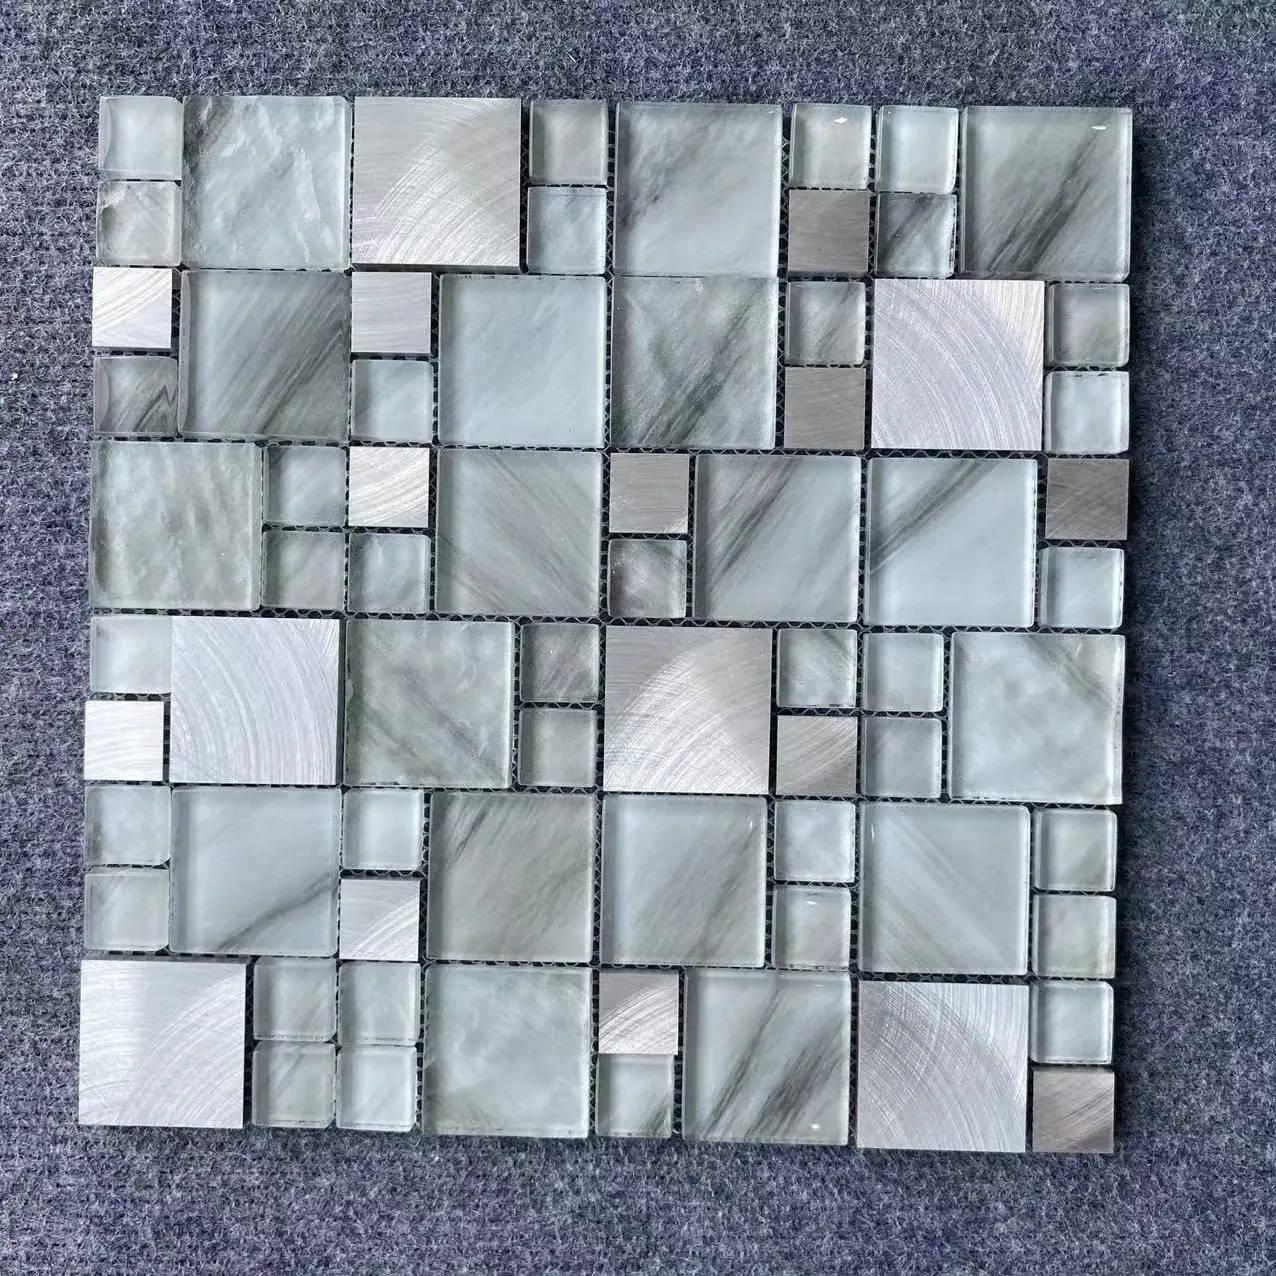 Foshan Parcos popolare mix di mattonelle di mosaico di vetro in acciaio inossidabile piastrelle di cristallo quadrato di mosaico per piscina